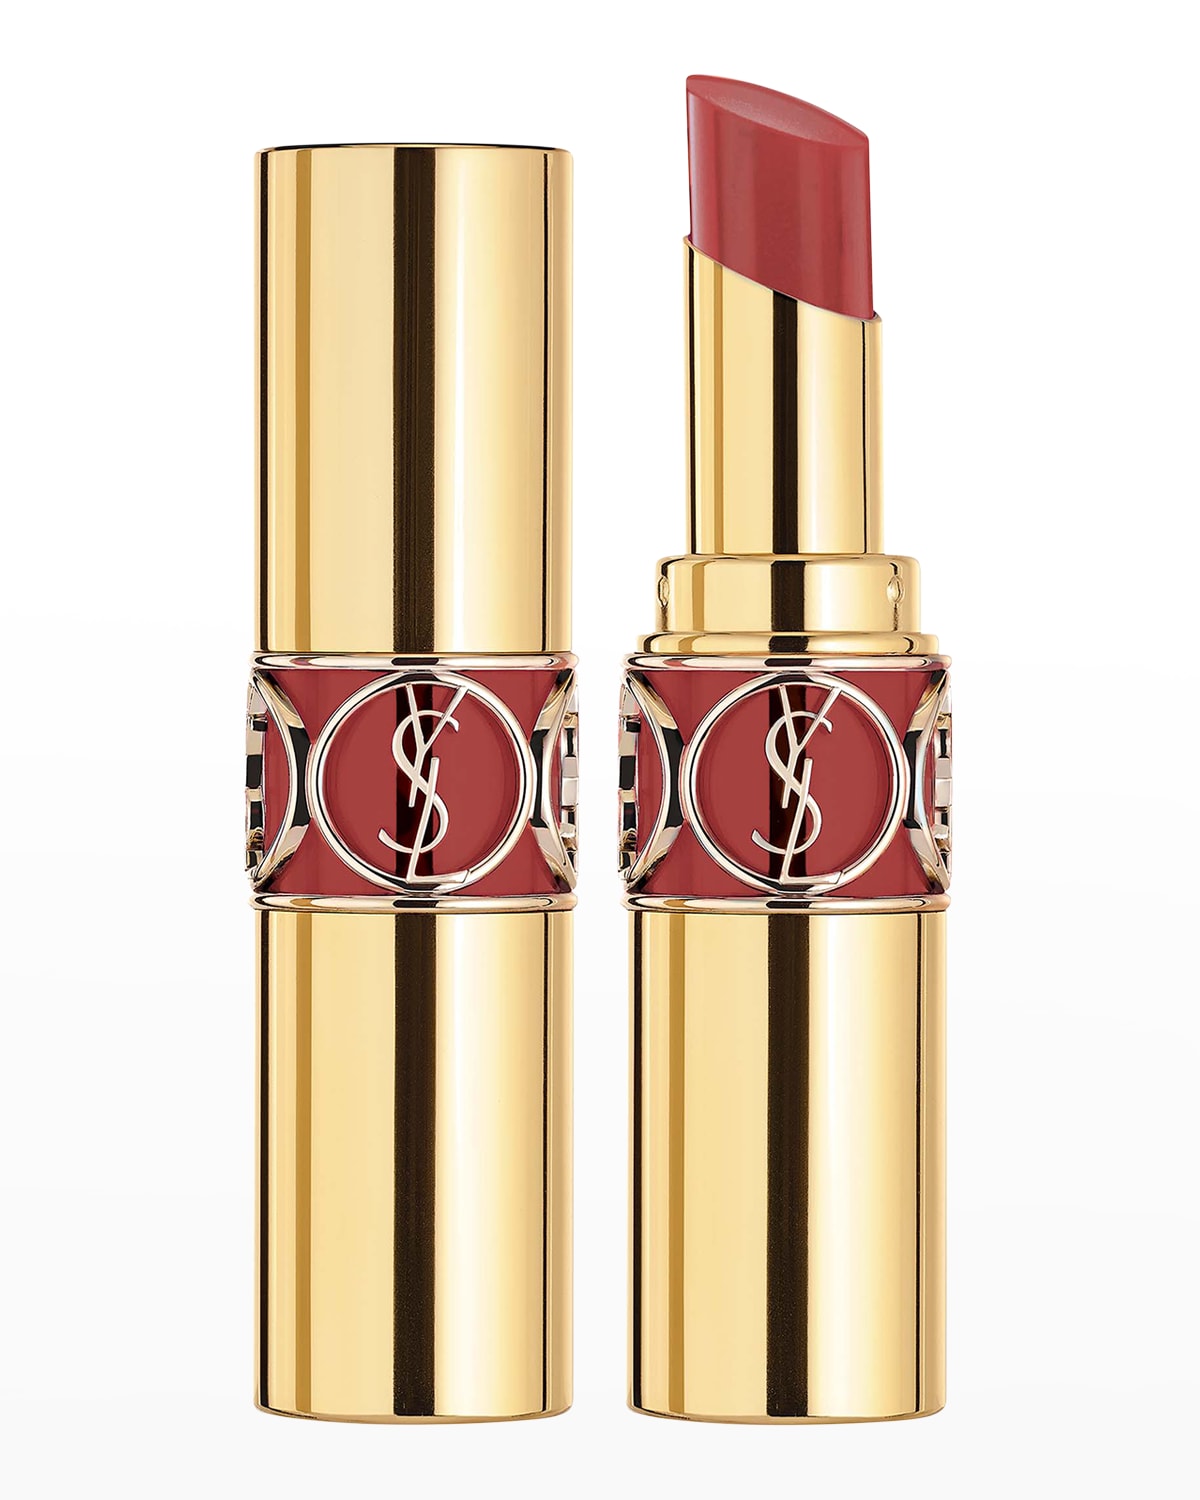 Yves Saint Laurent Beaute Rouge Volupte Shine Lipstick